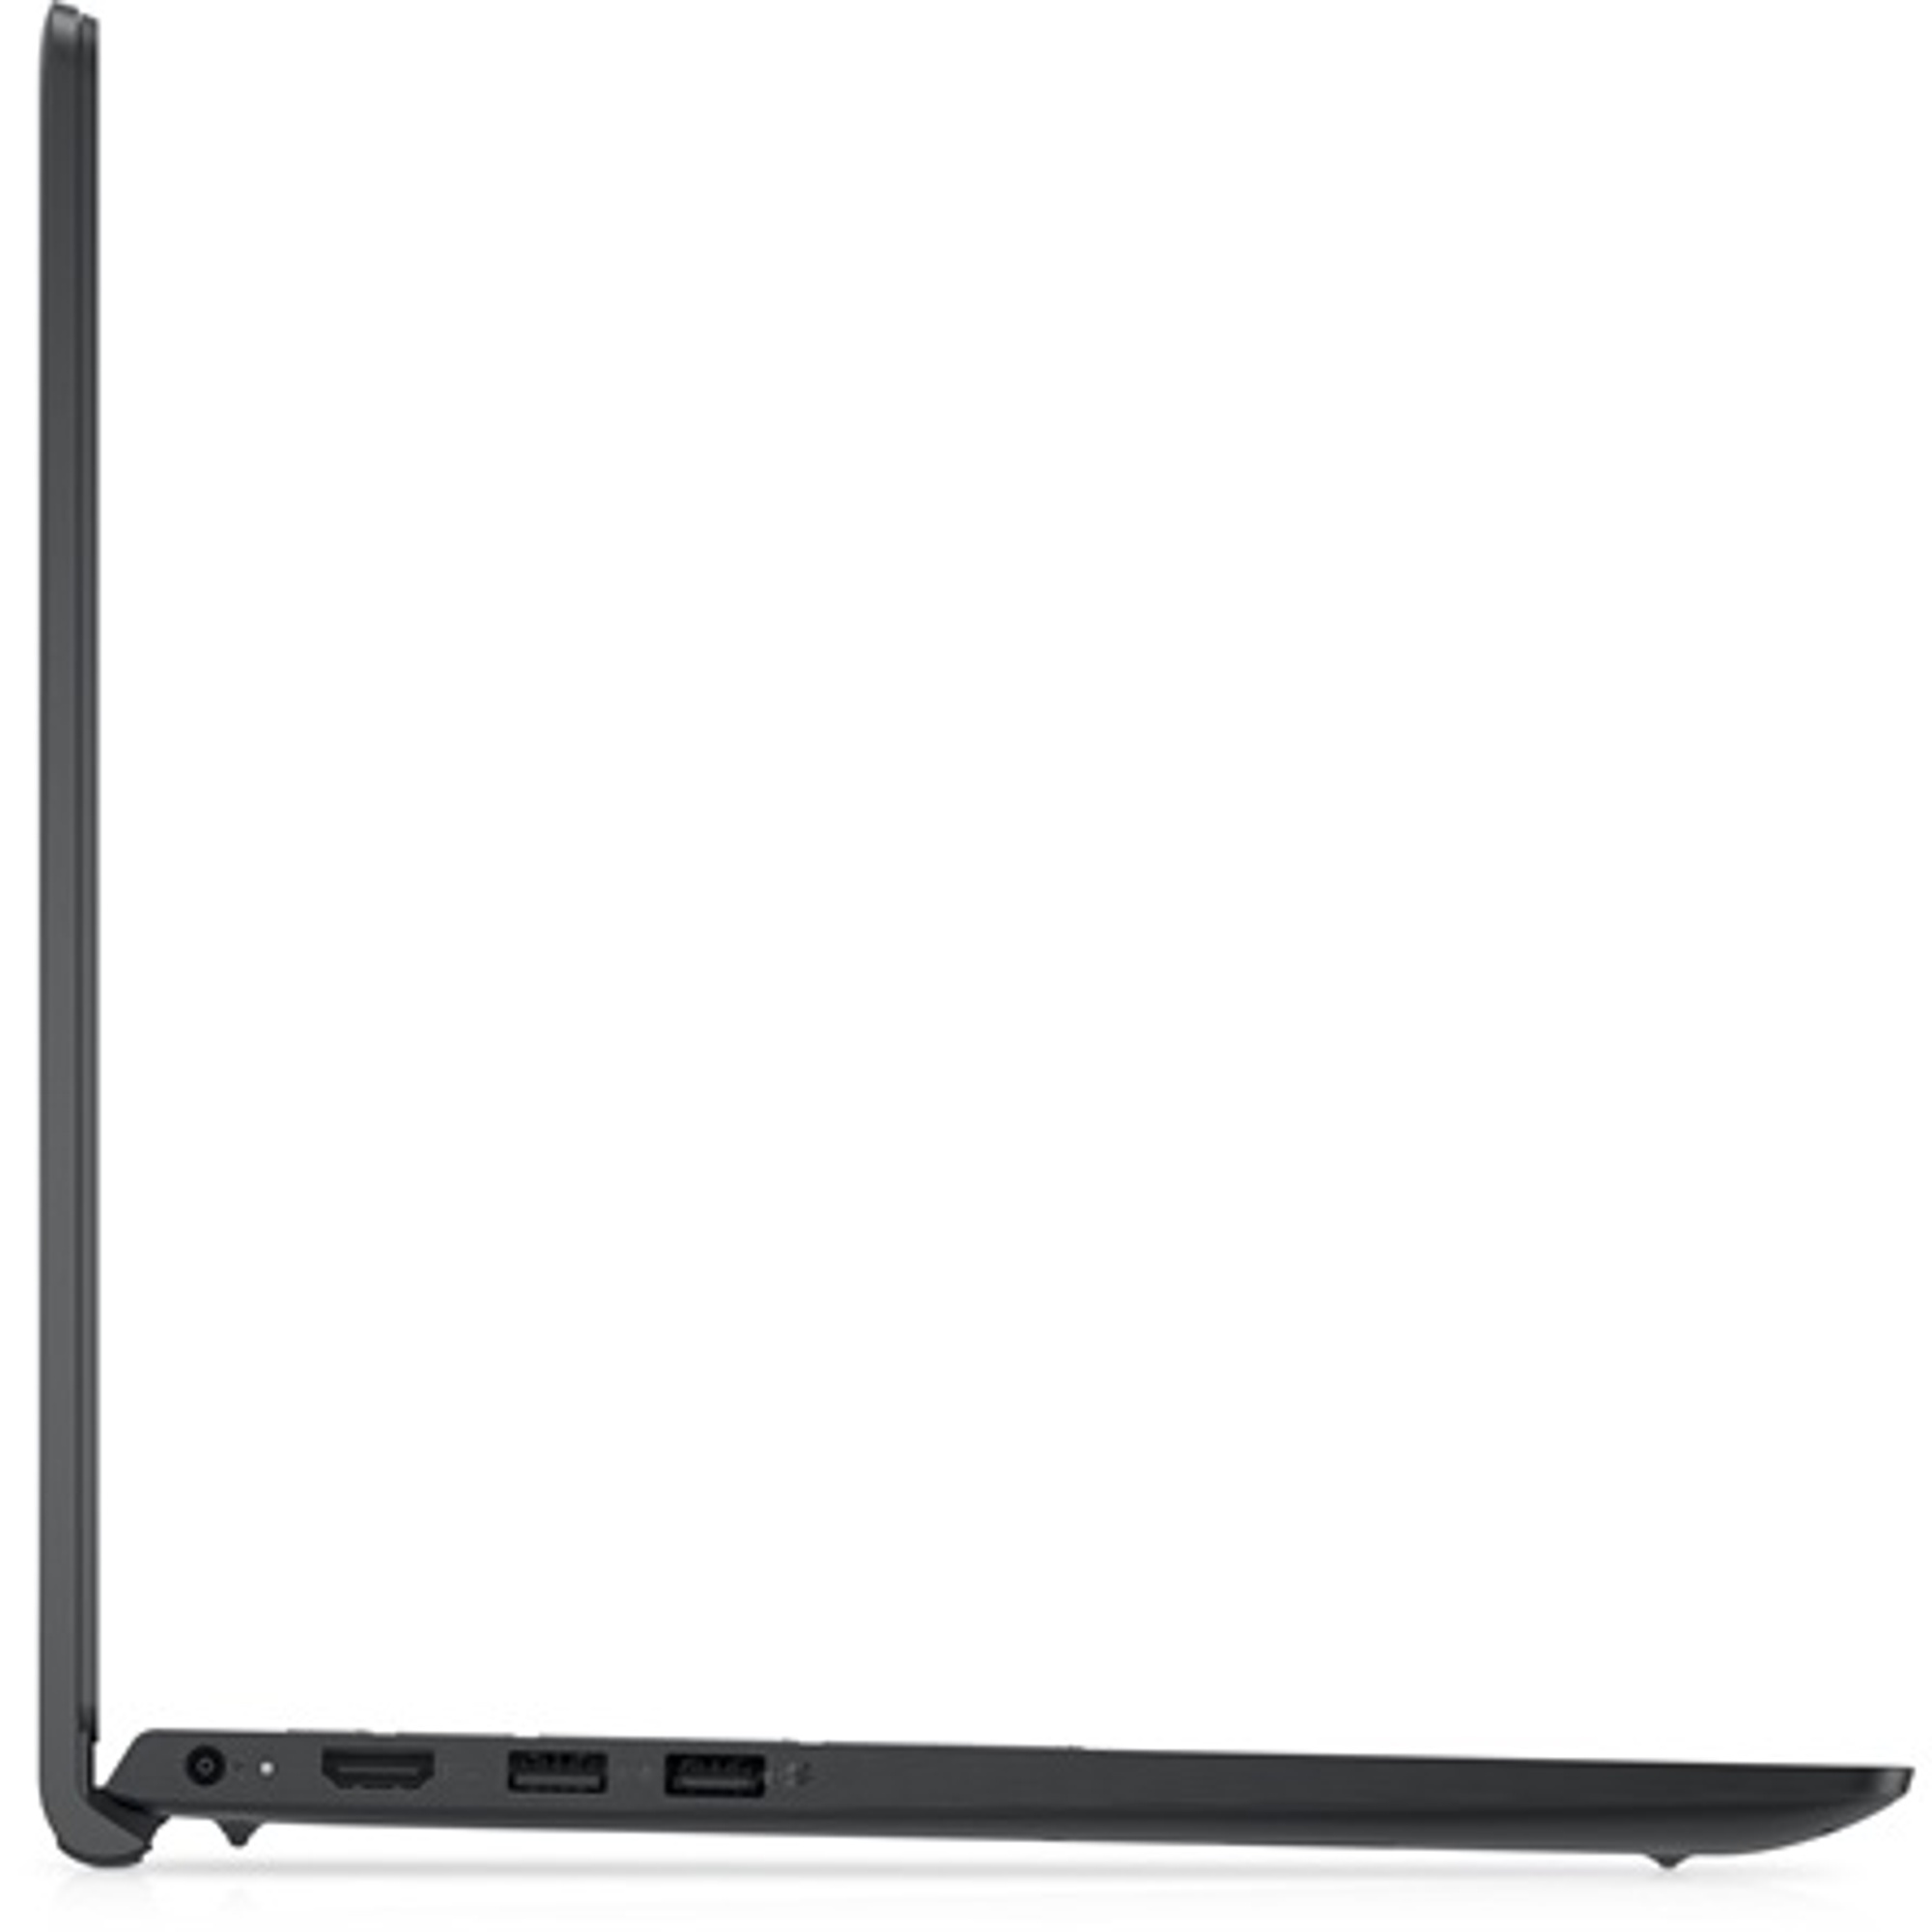 DELL V3520-16 Laptop / Notebook 3